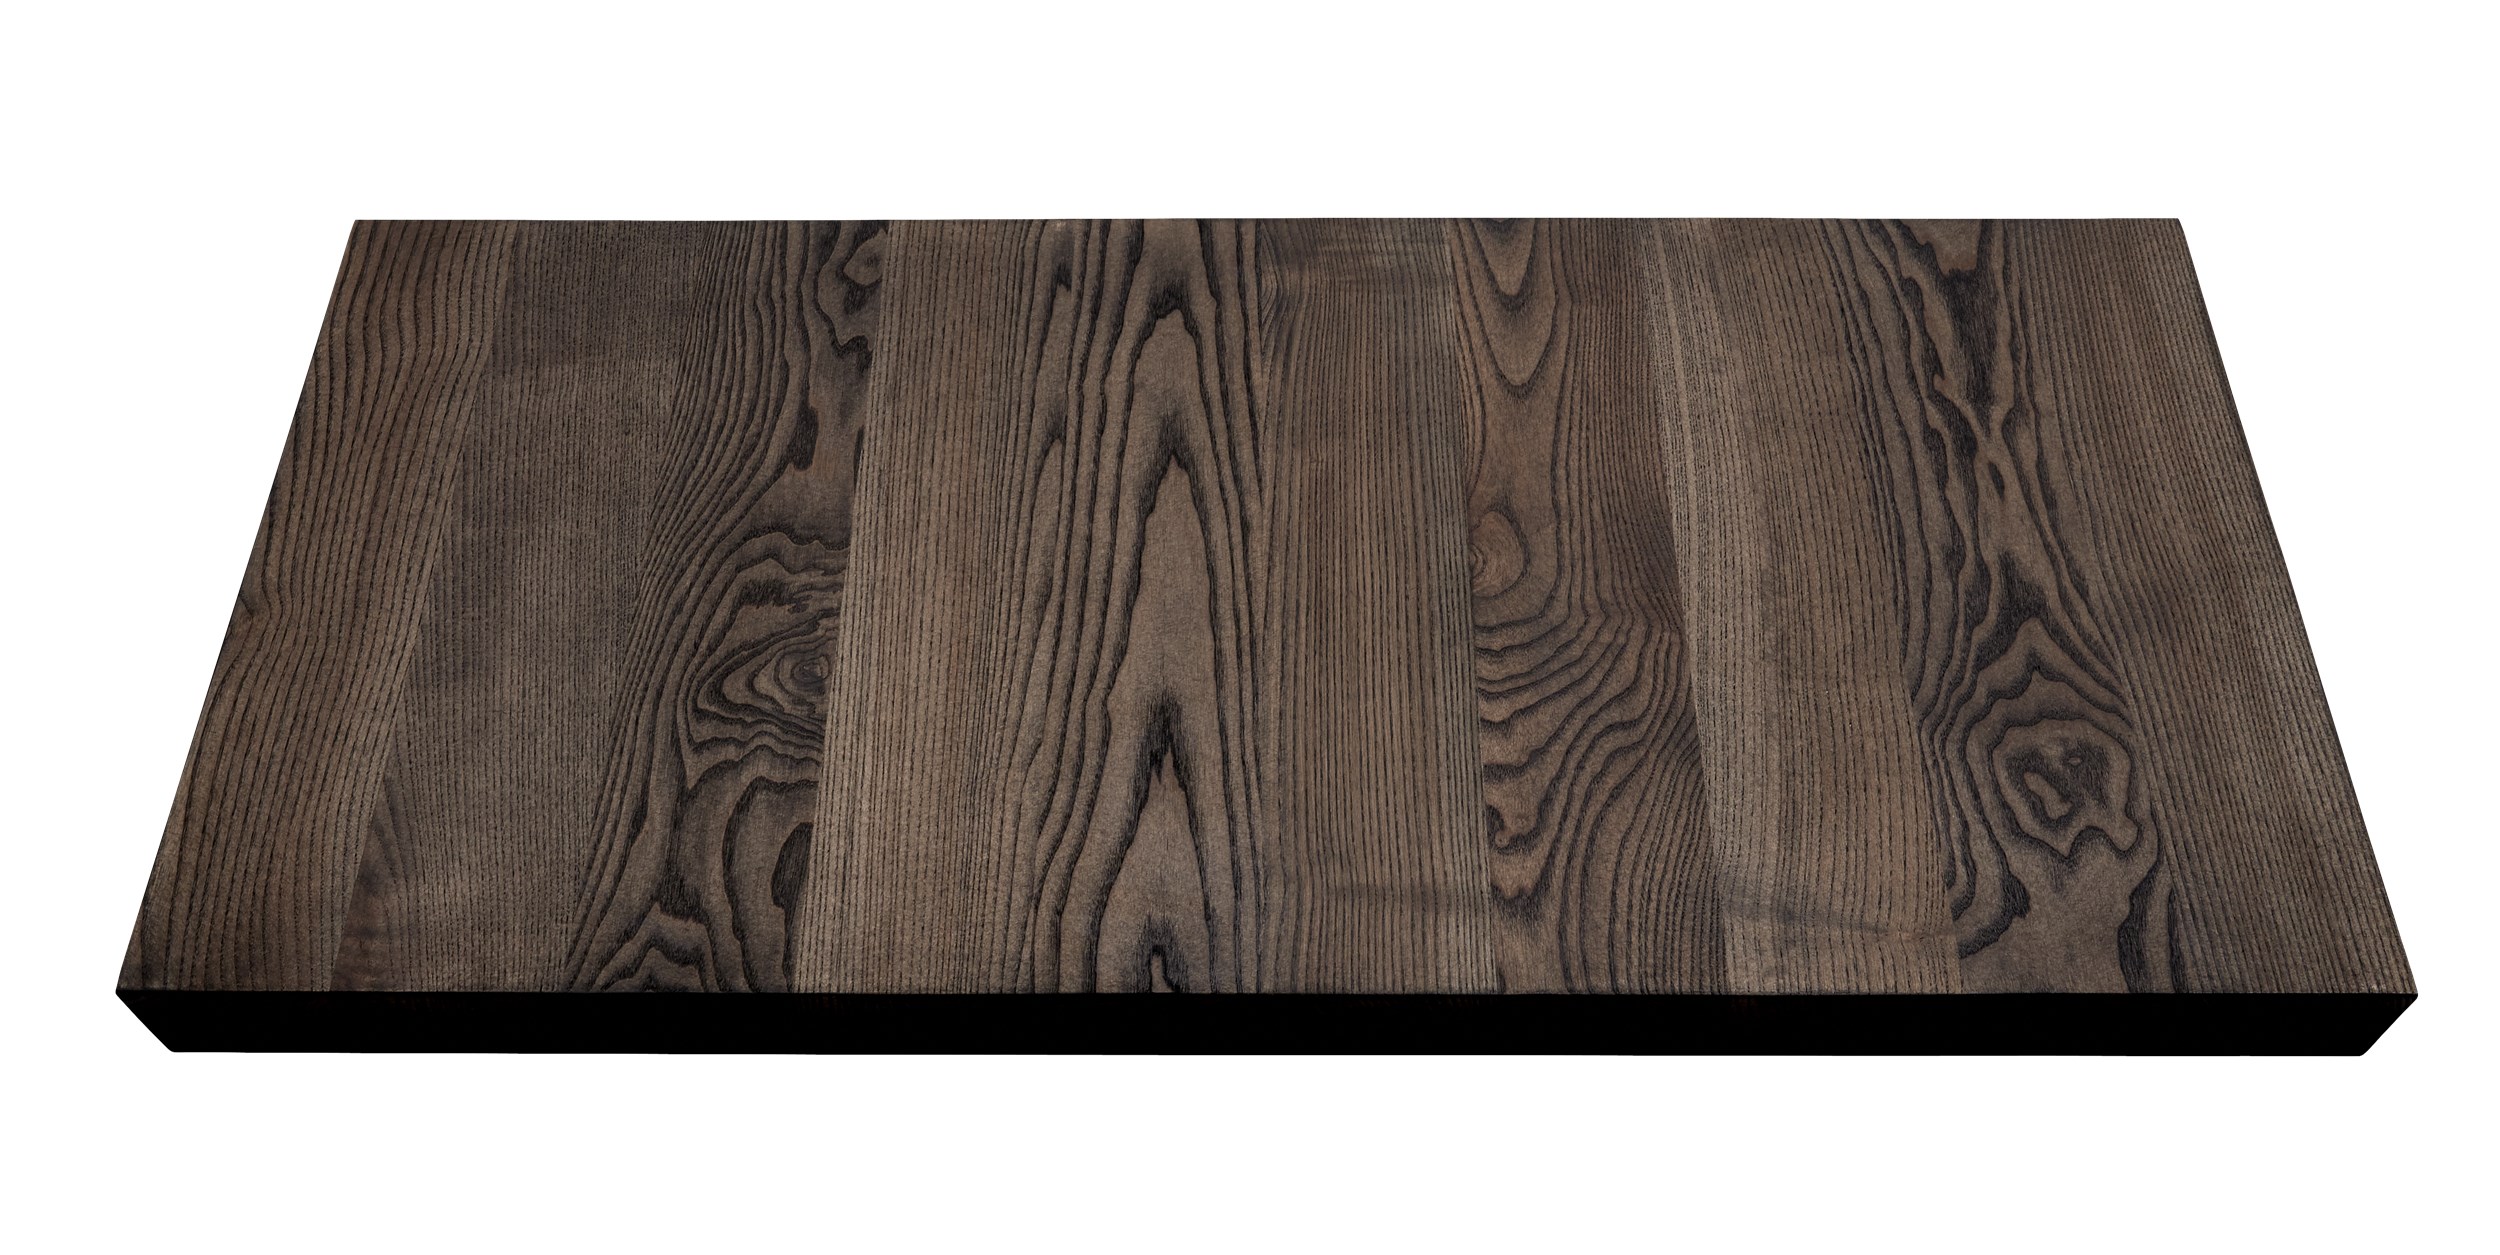 Timber Tillægsplade 50 x 4 x 100 cm - Moccabrun olieret massiv ask, skrå kant og 1 planke